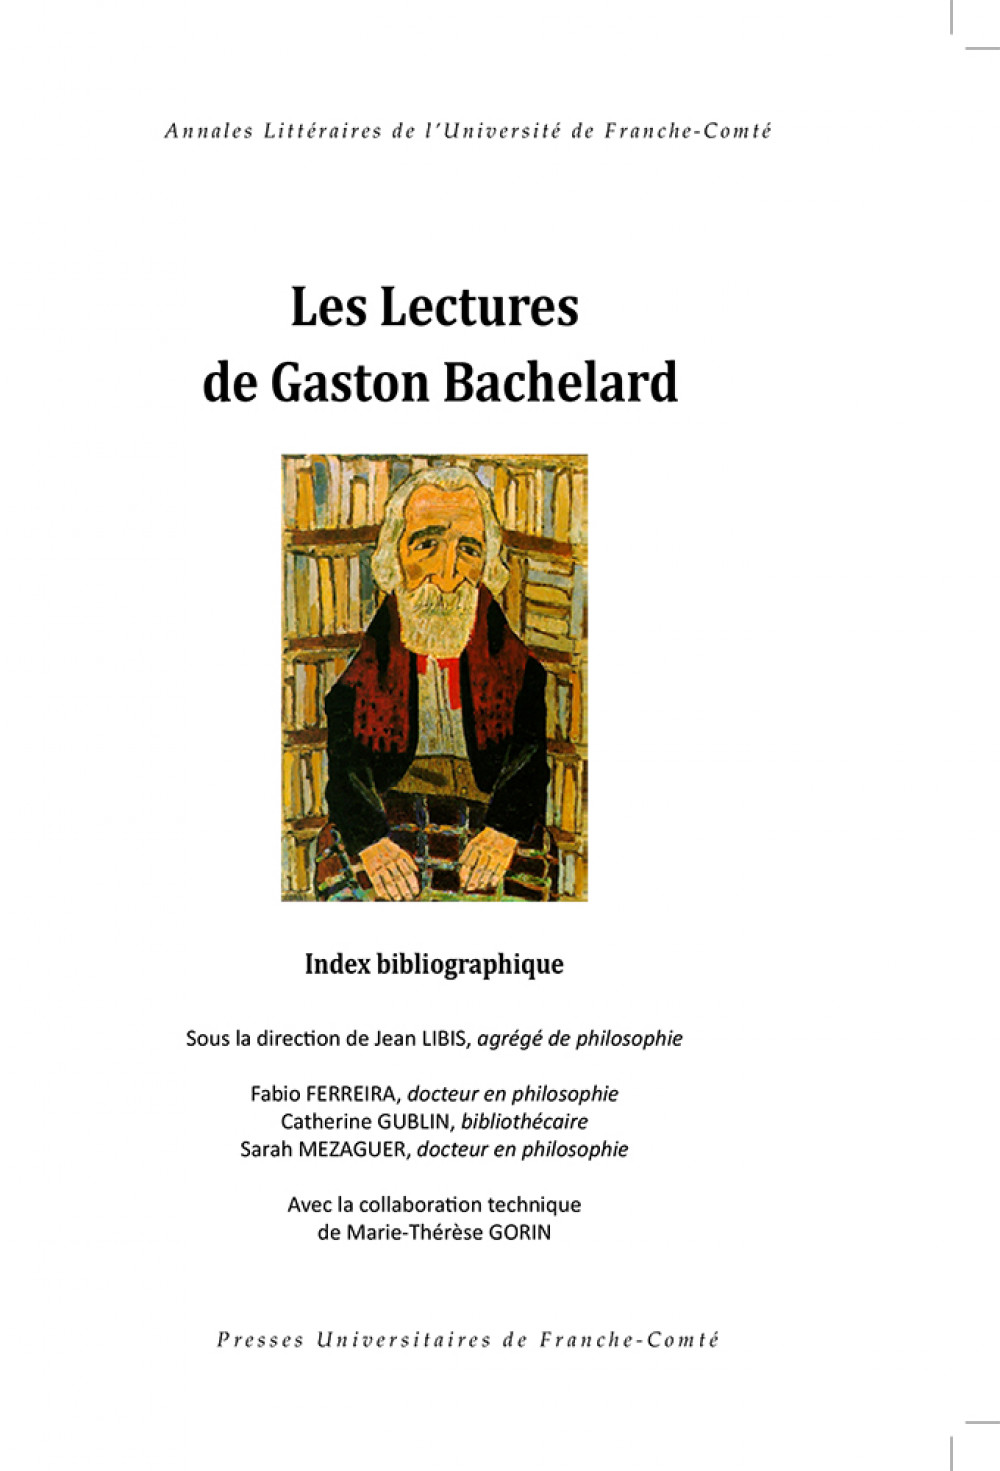 Les lectures de Gaston Bachelard